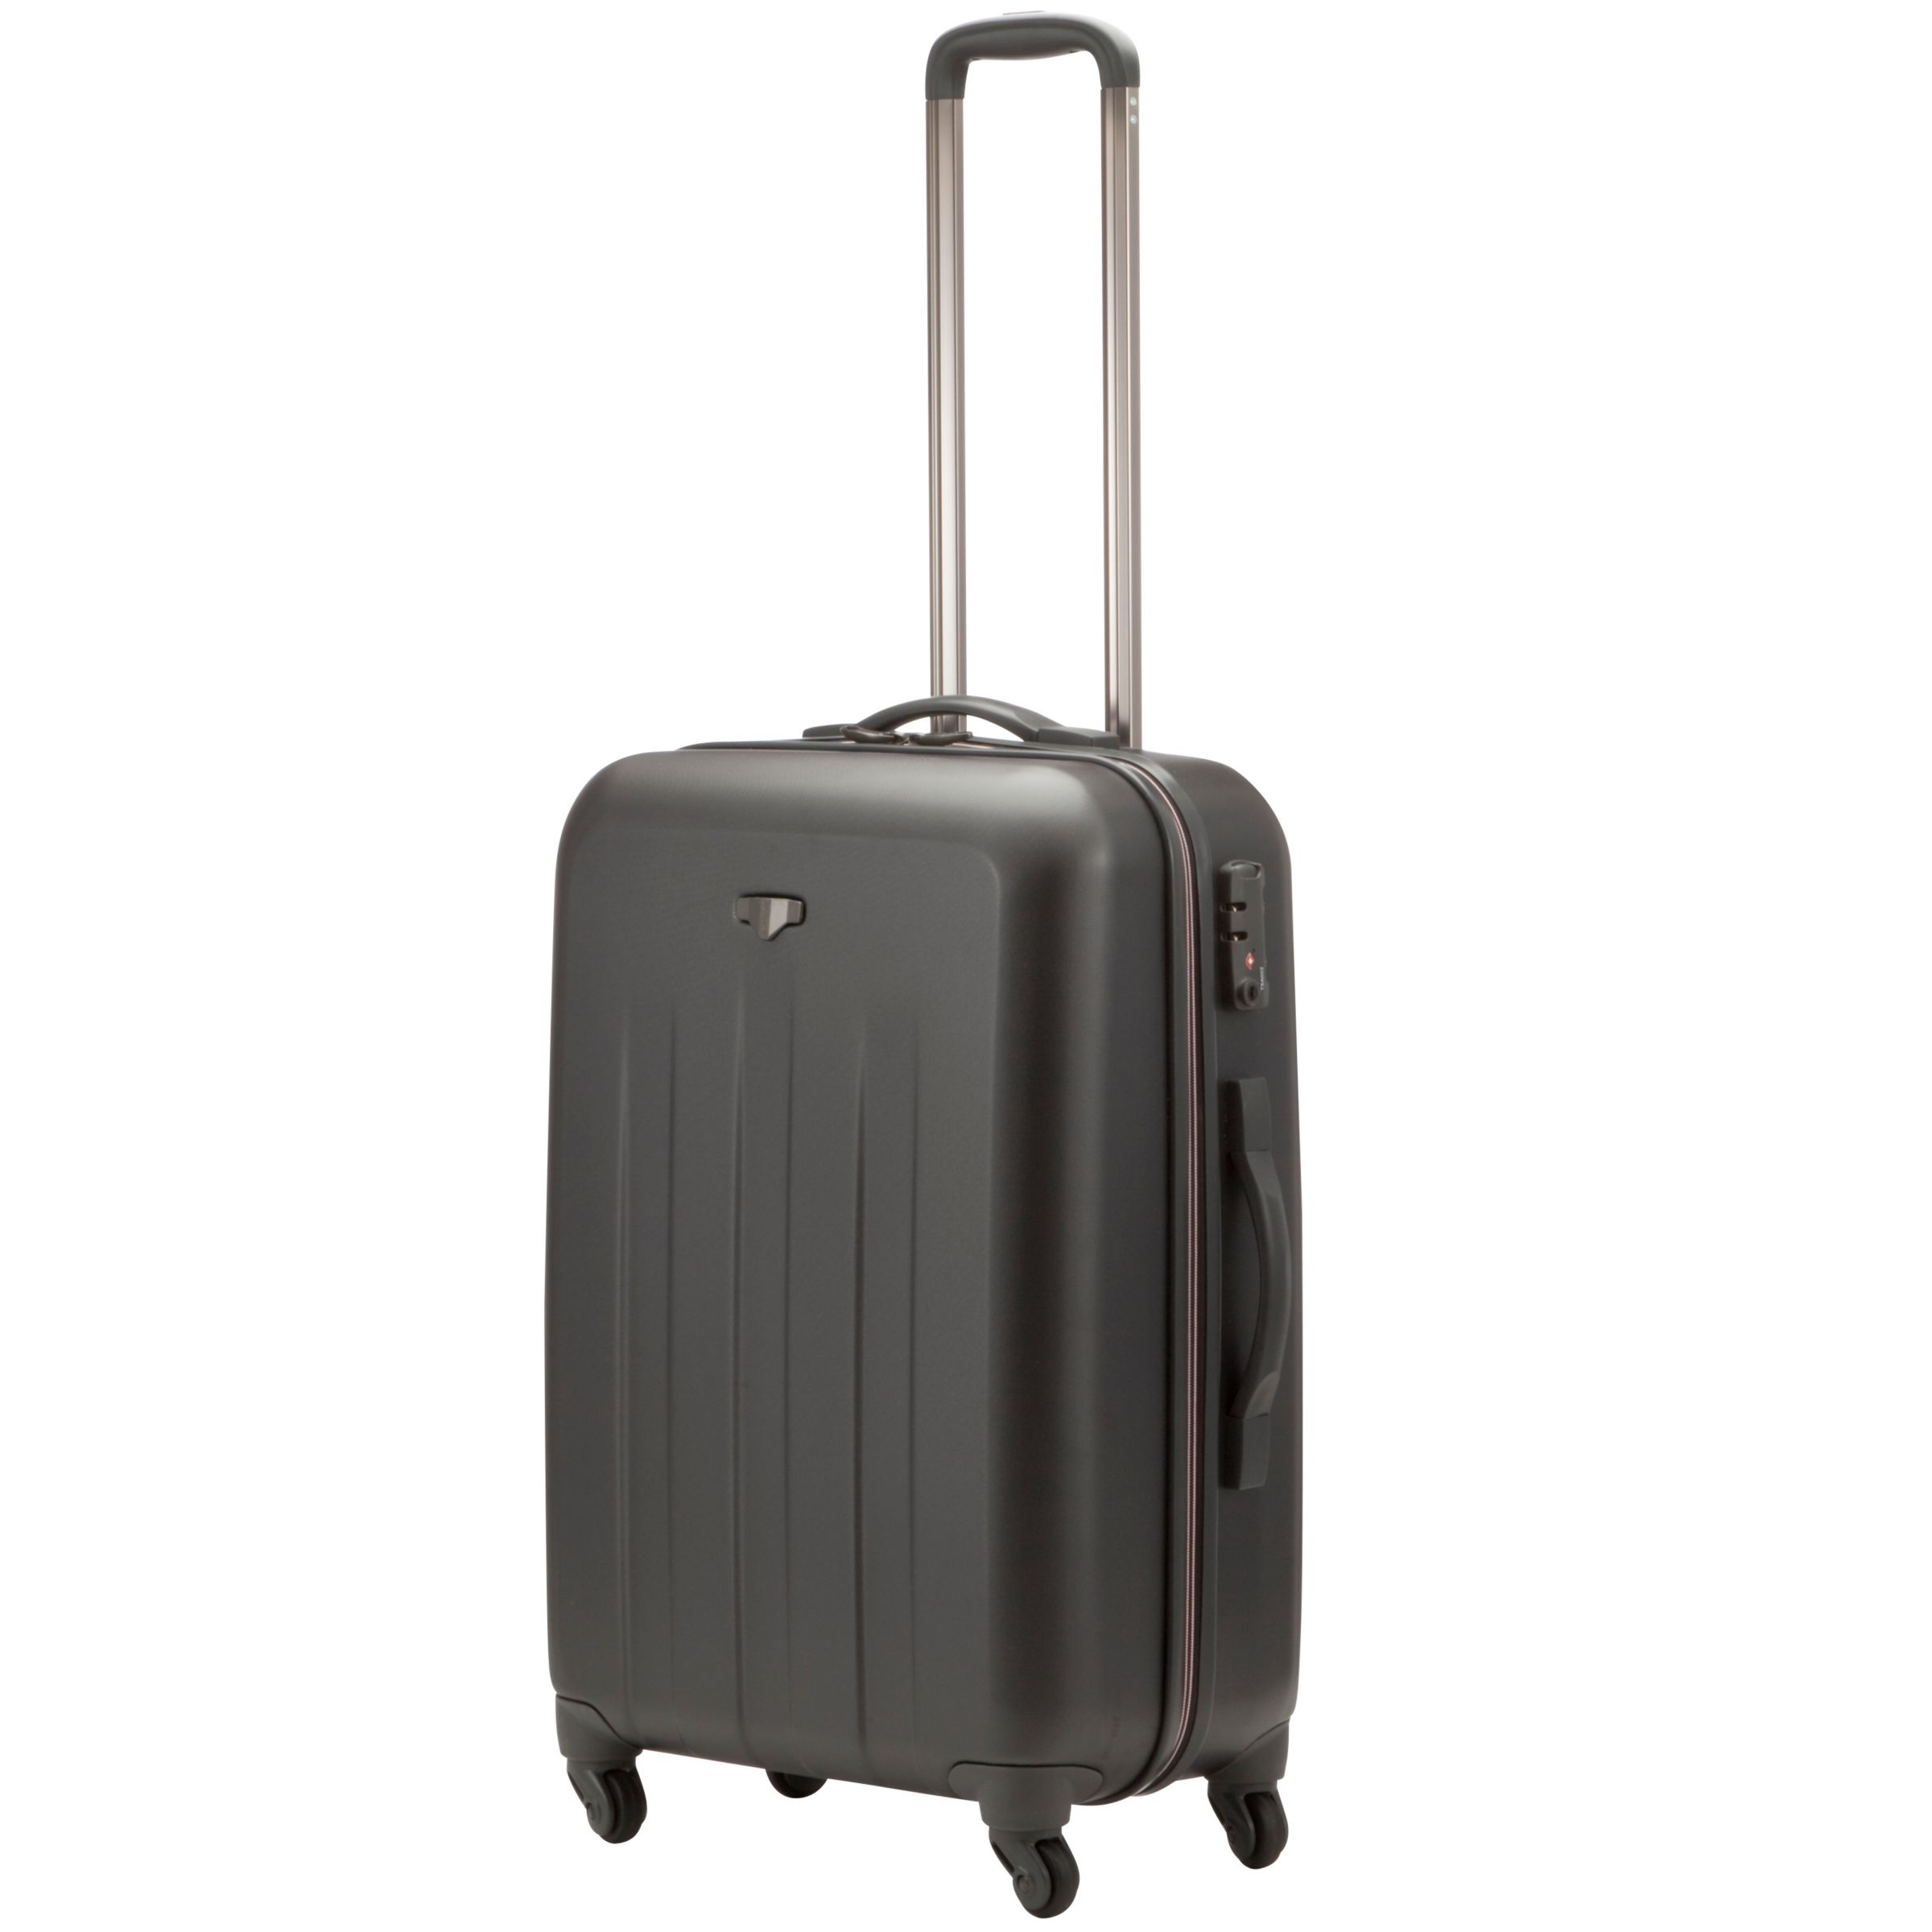 John Lewis Jupiter 4-Wheel Medium Suitcase, Graphite at John Lewis & Partners